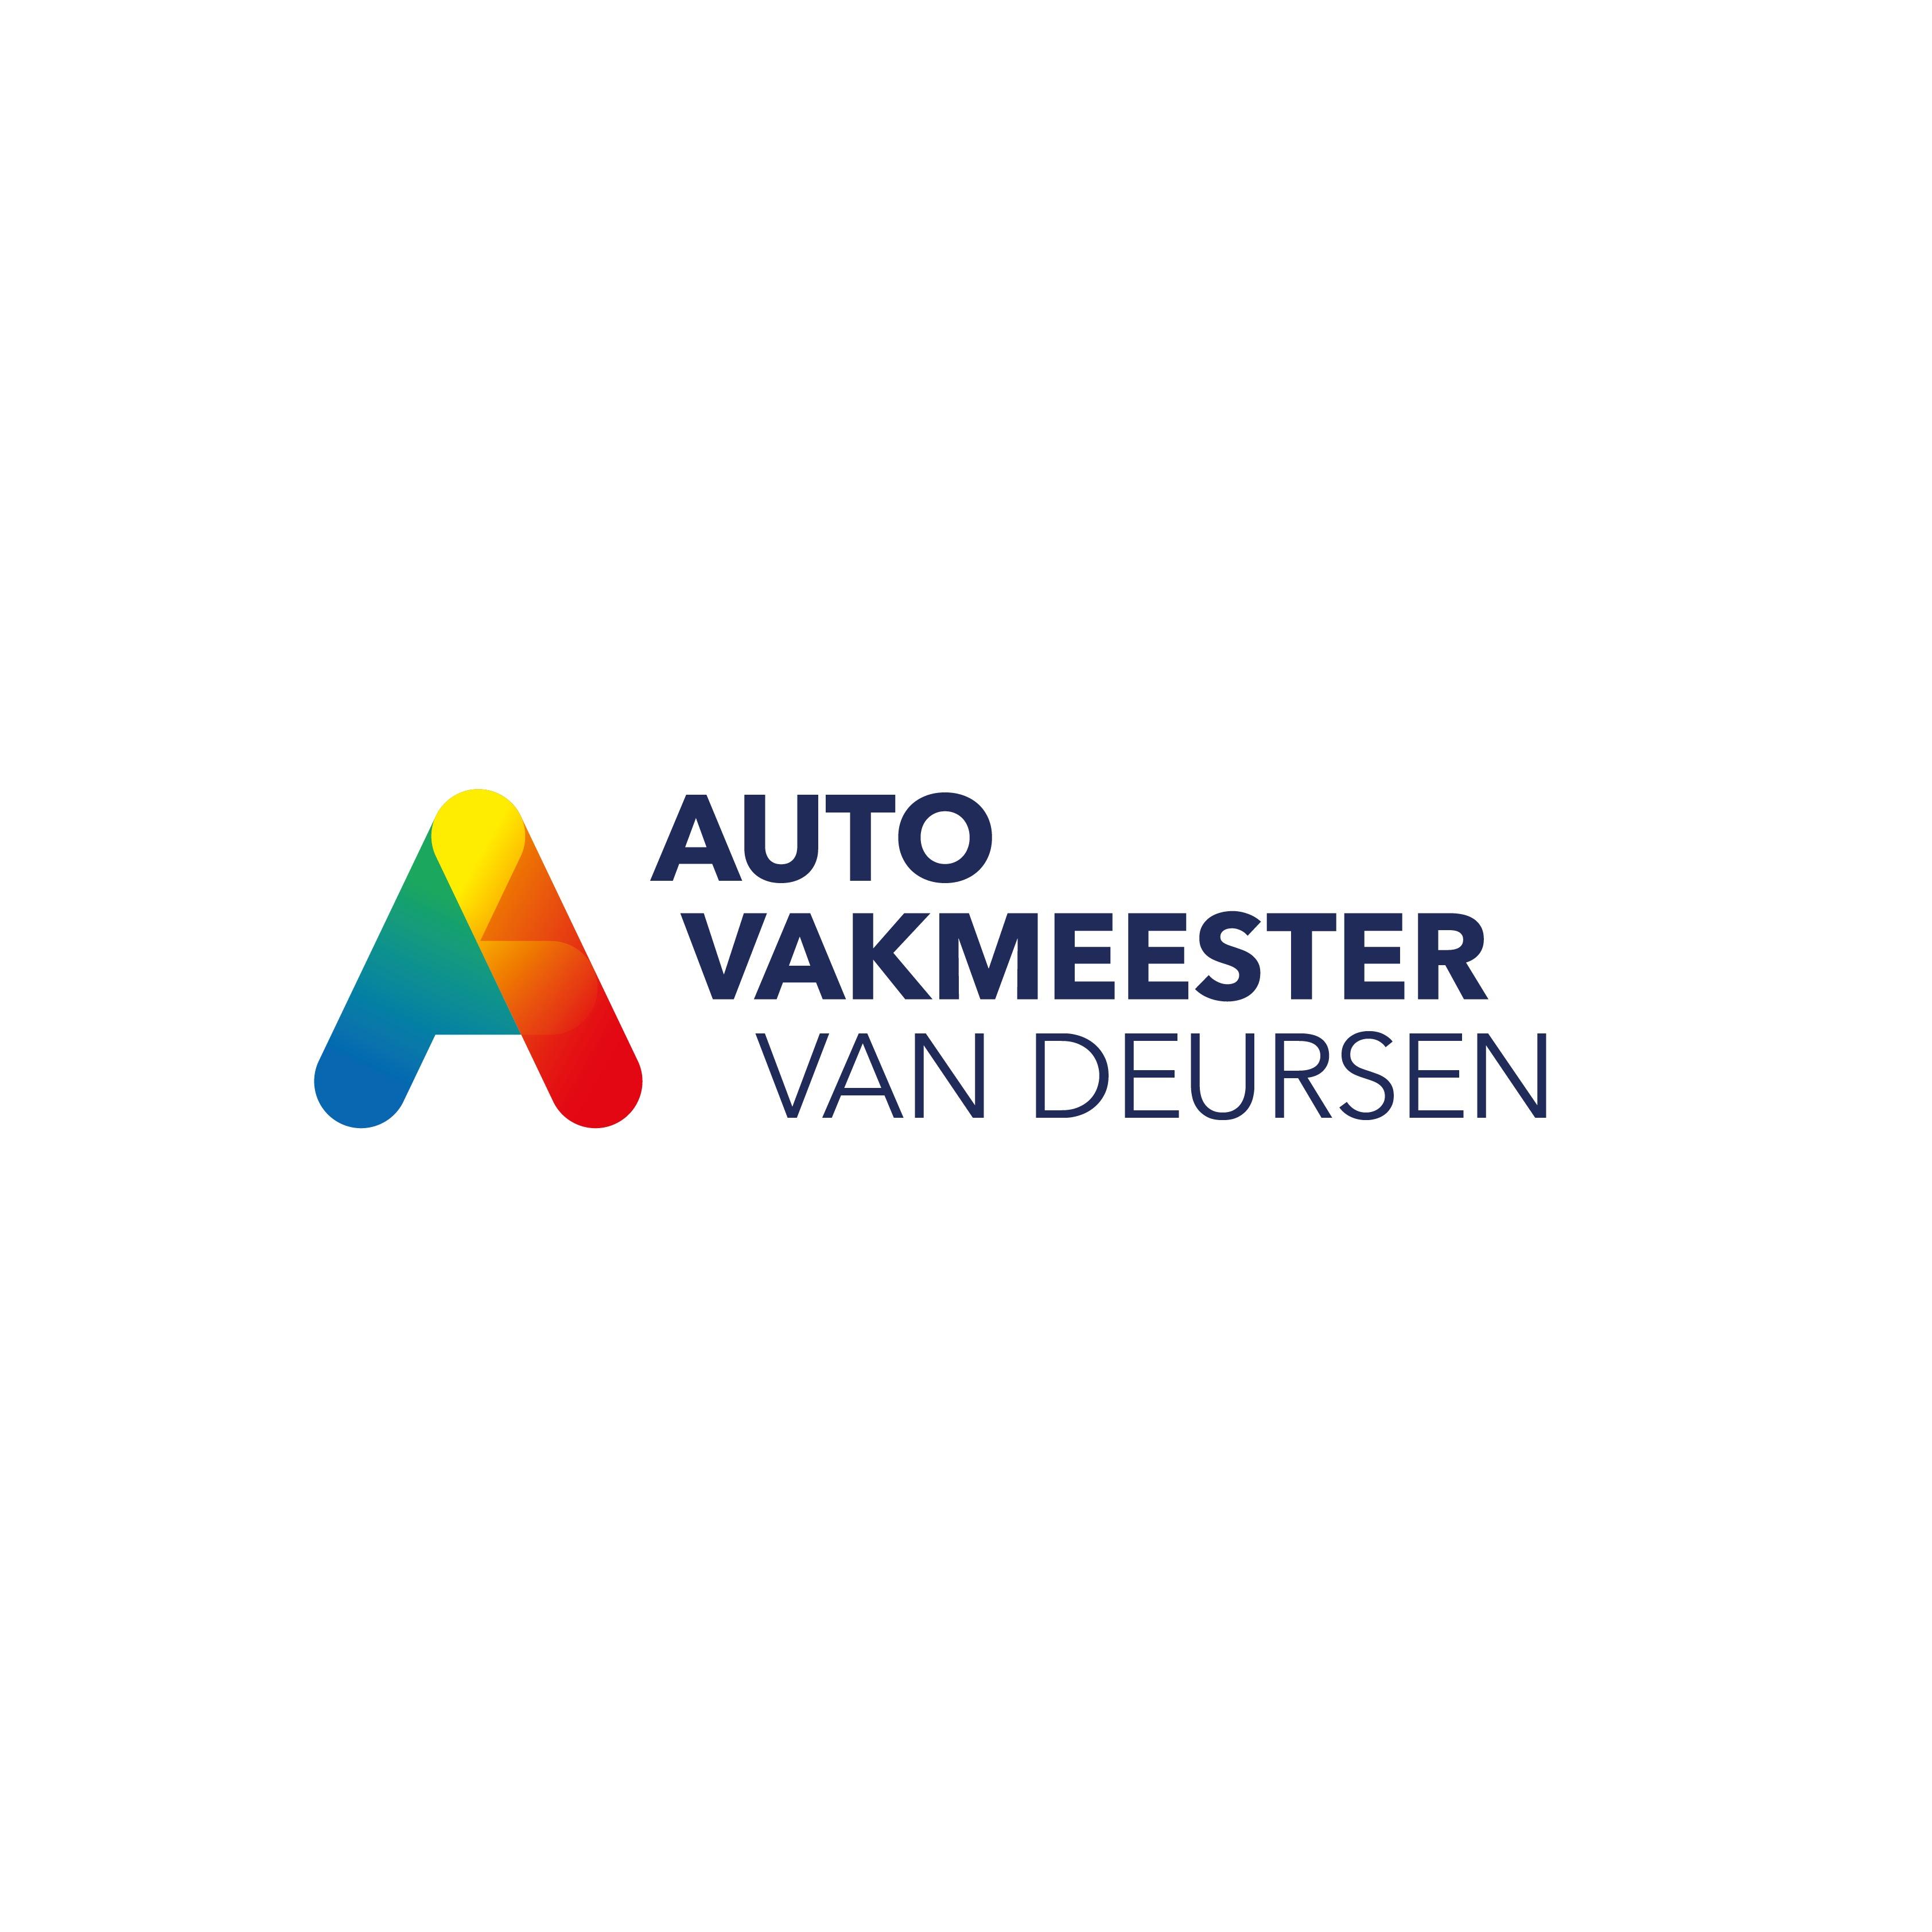 Autovakmeester van Deursen Logo